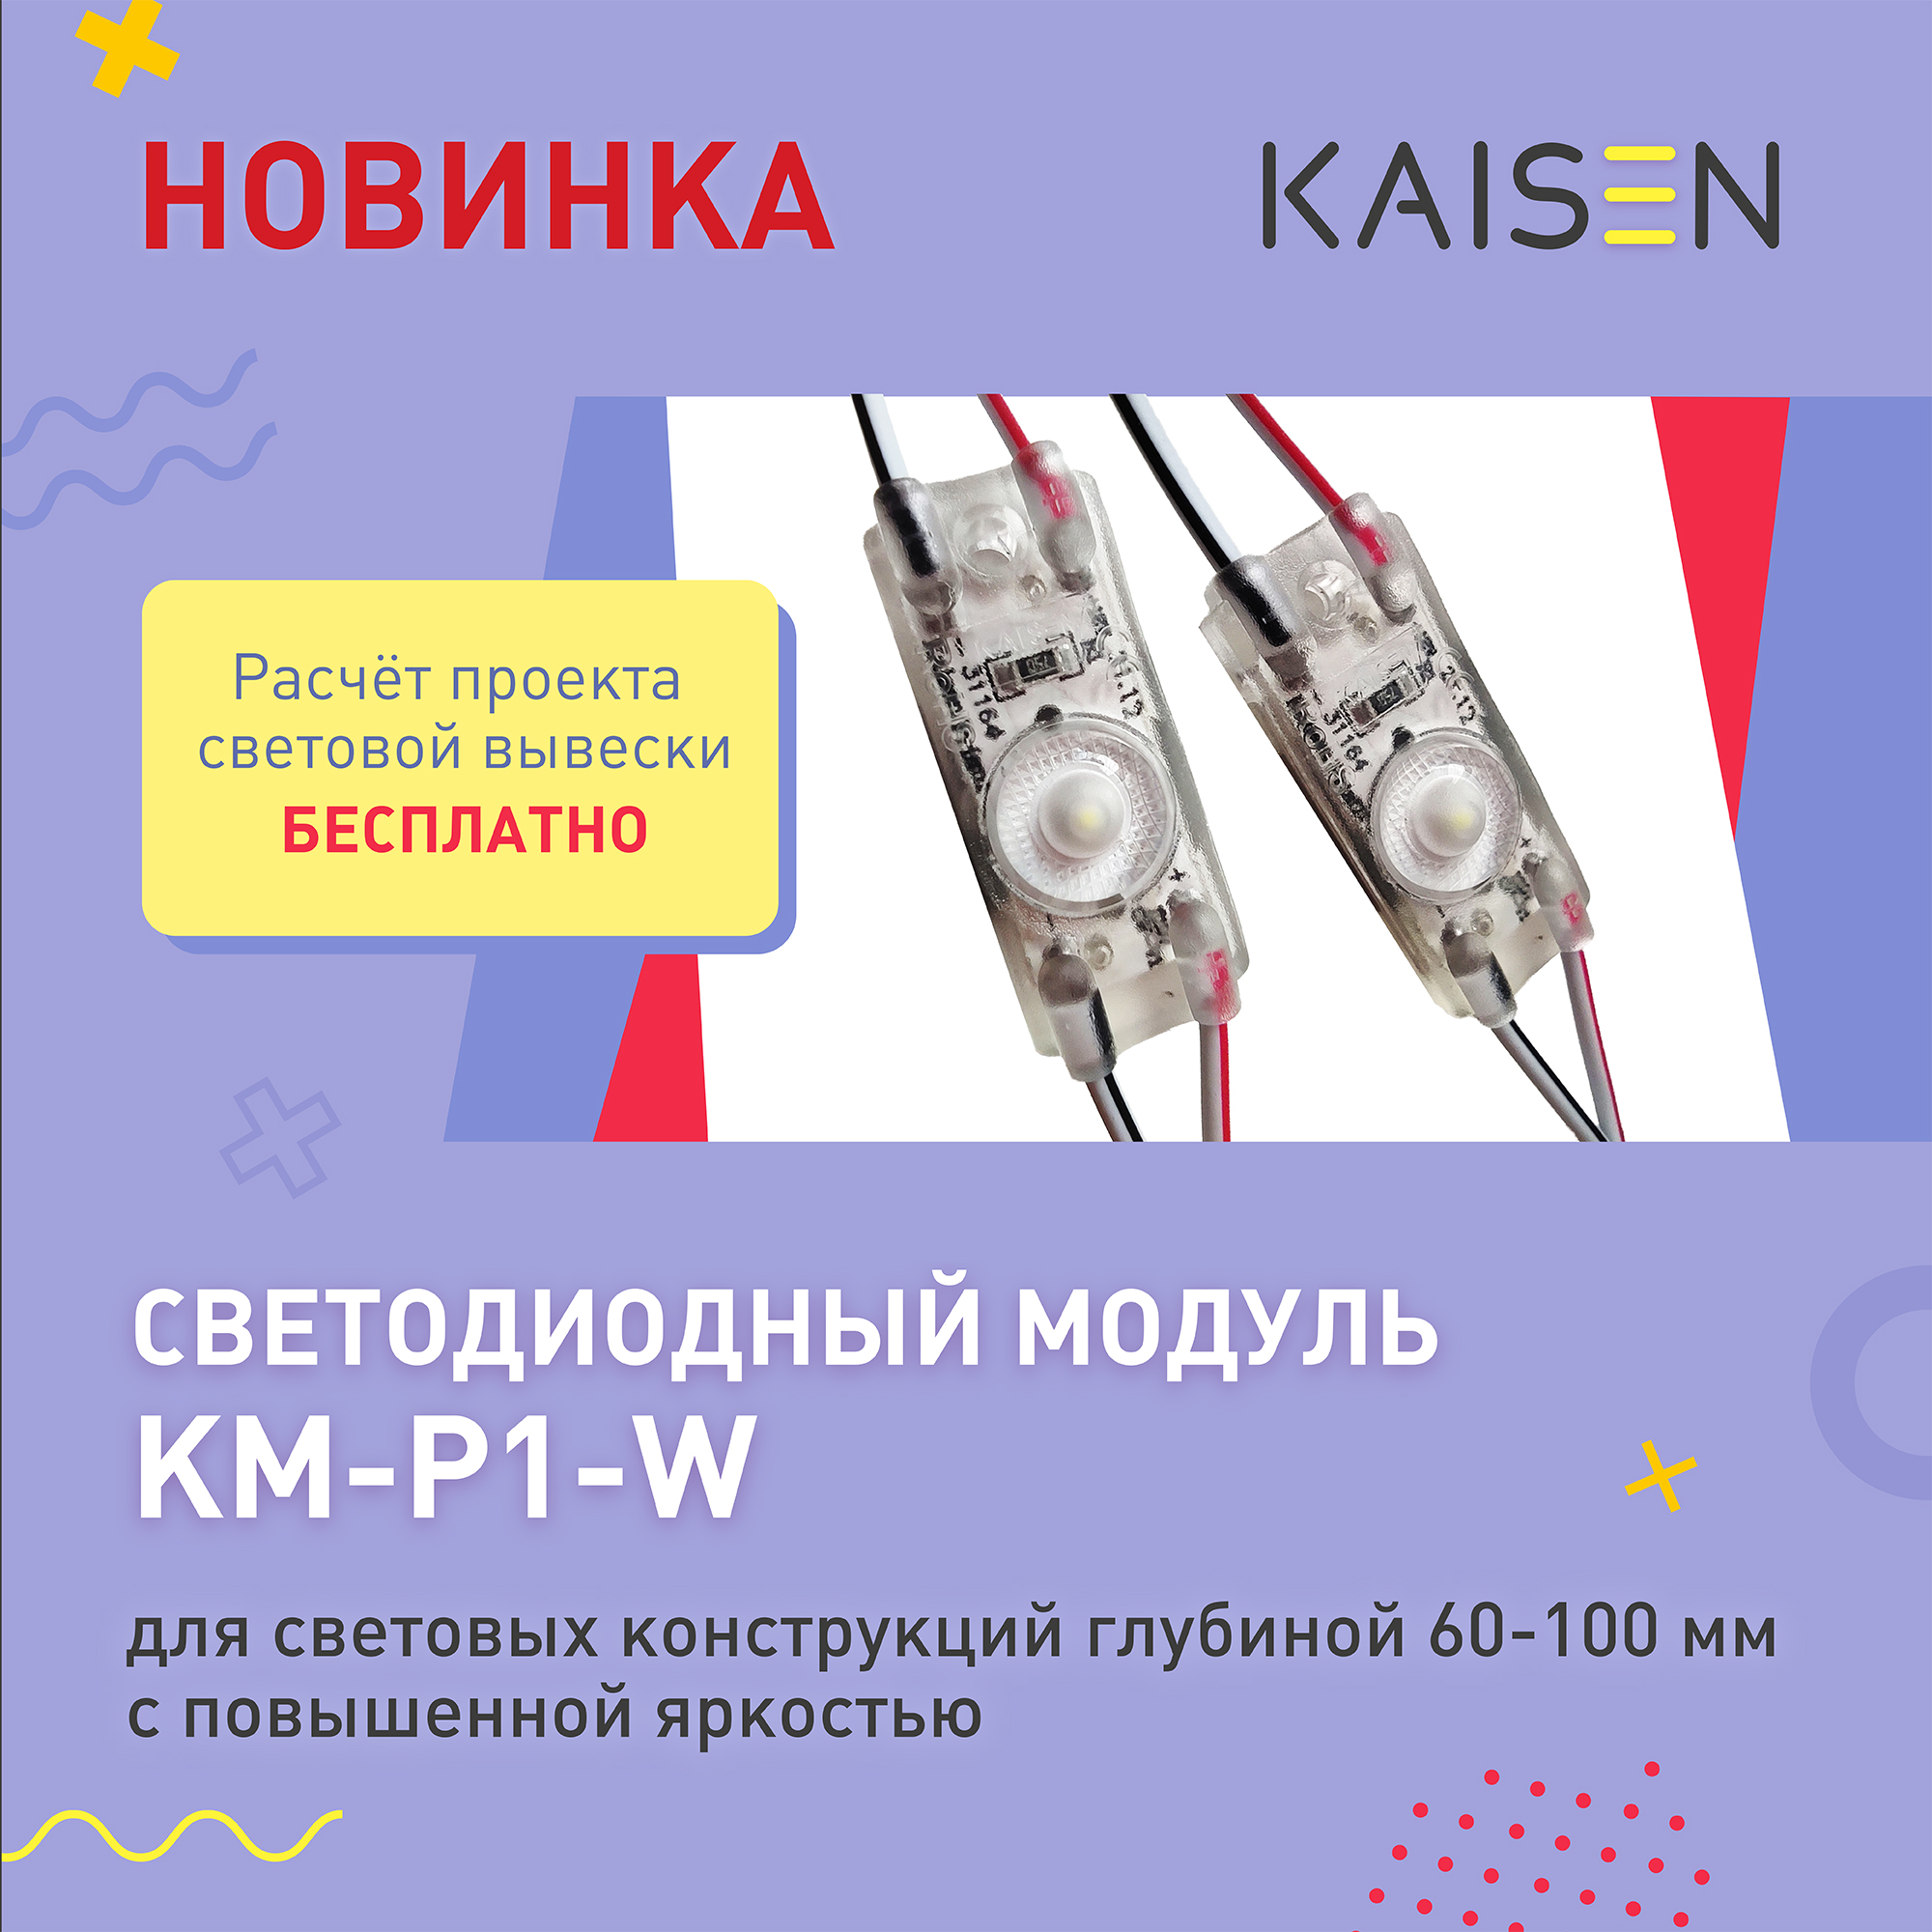 Светодиодный модуль KM-P1-W